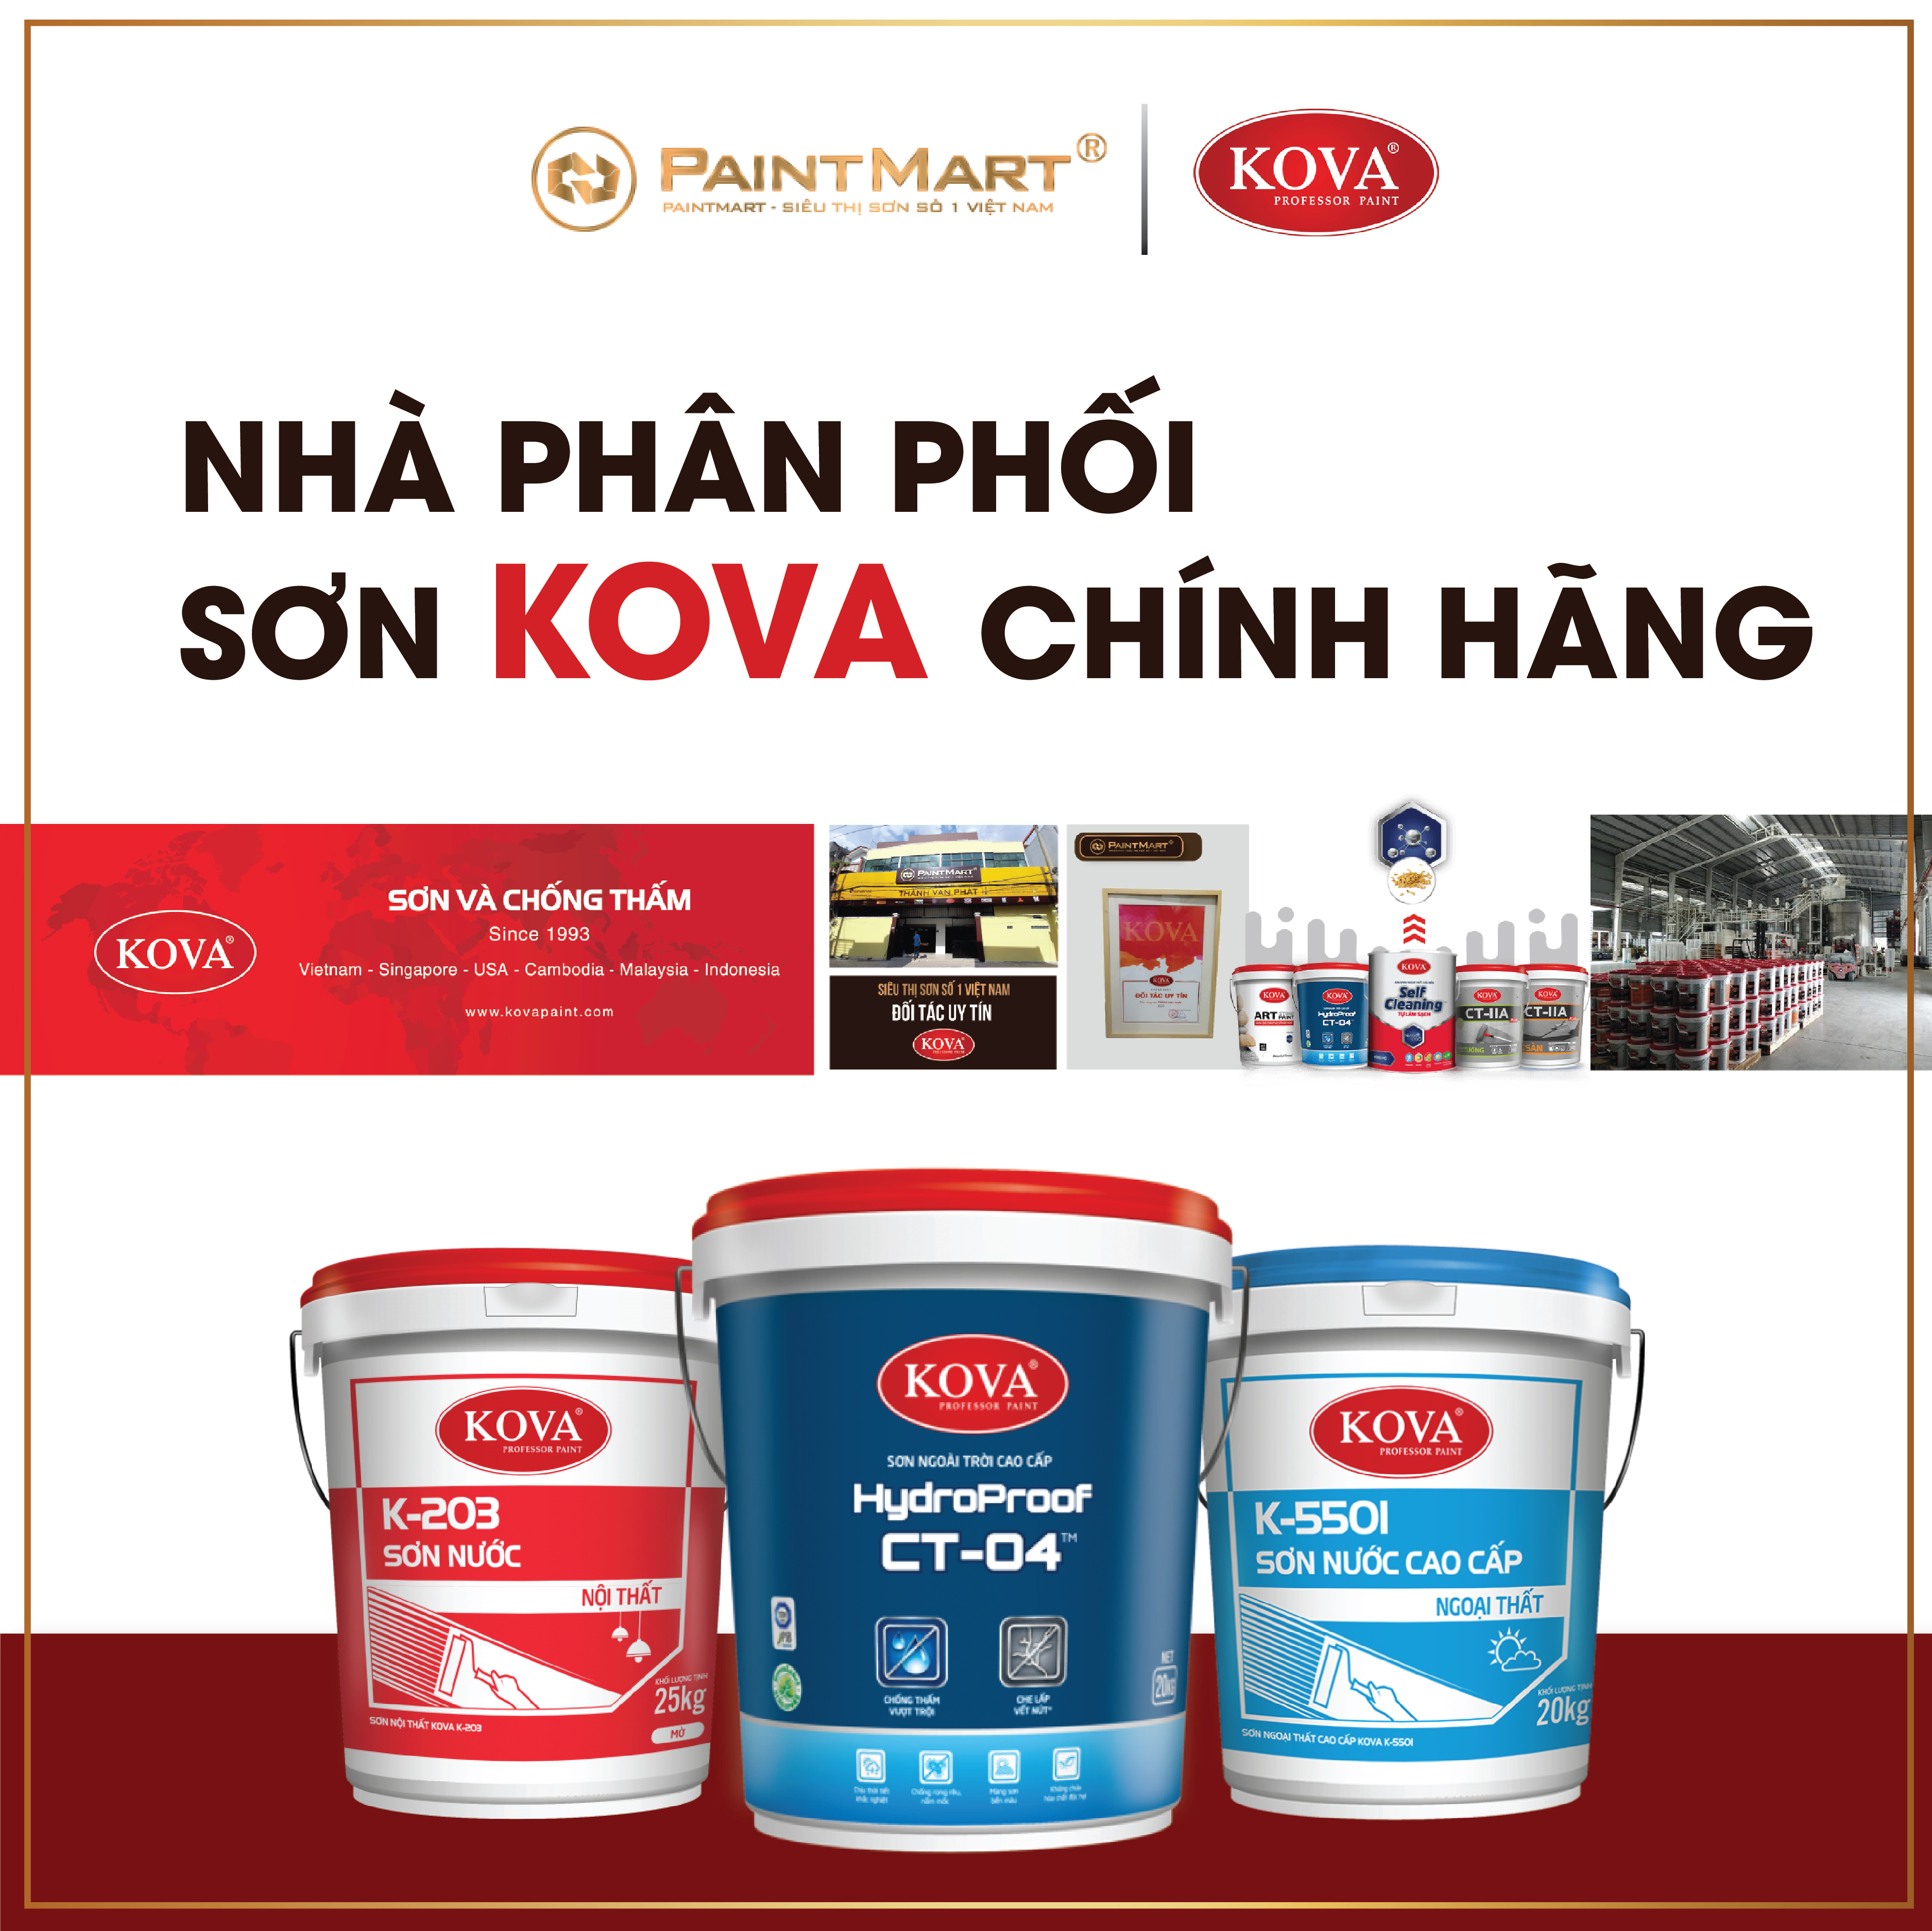 Đại lý sơn Kova là nhà phân phối sơn Kova chính hãng tại Việt Nam. Với uy tín và chất lượng tốt nhất, đại lý sẽ đem đến cho bạn những sản phẩm tốt nhất để bảo vệ ngôi nhà của bạn.